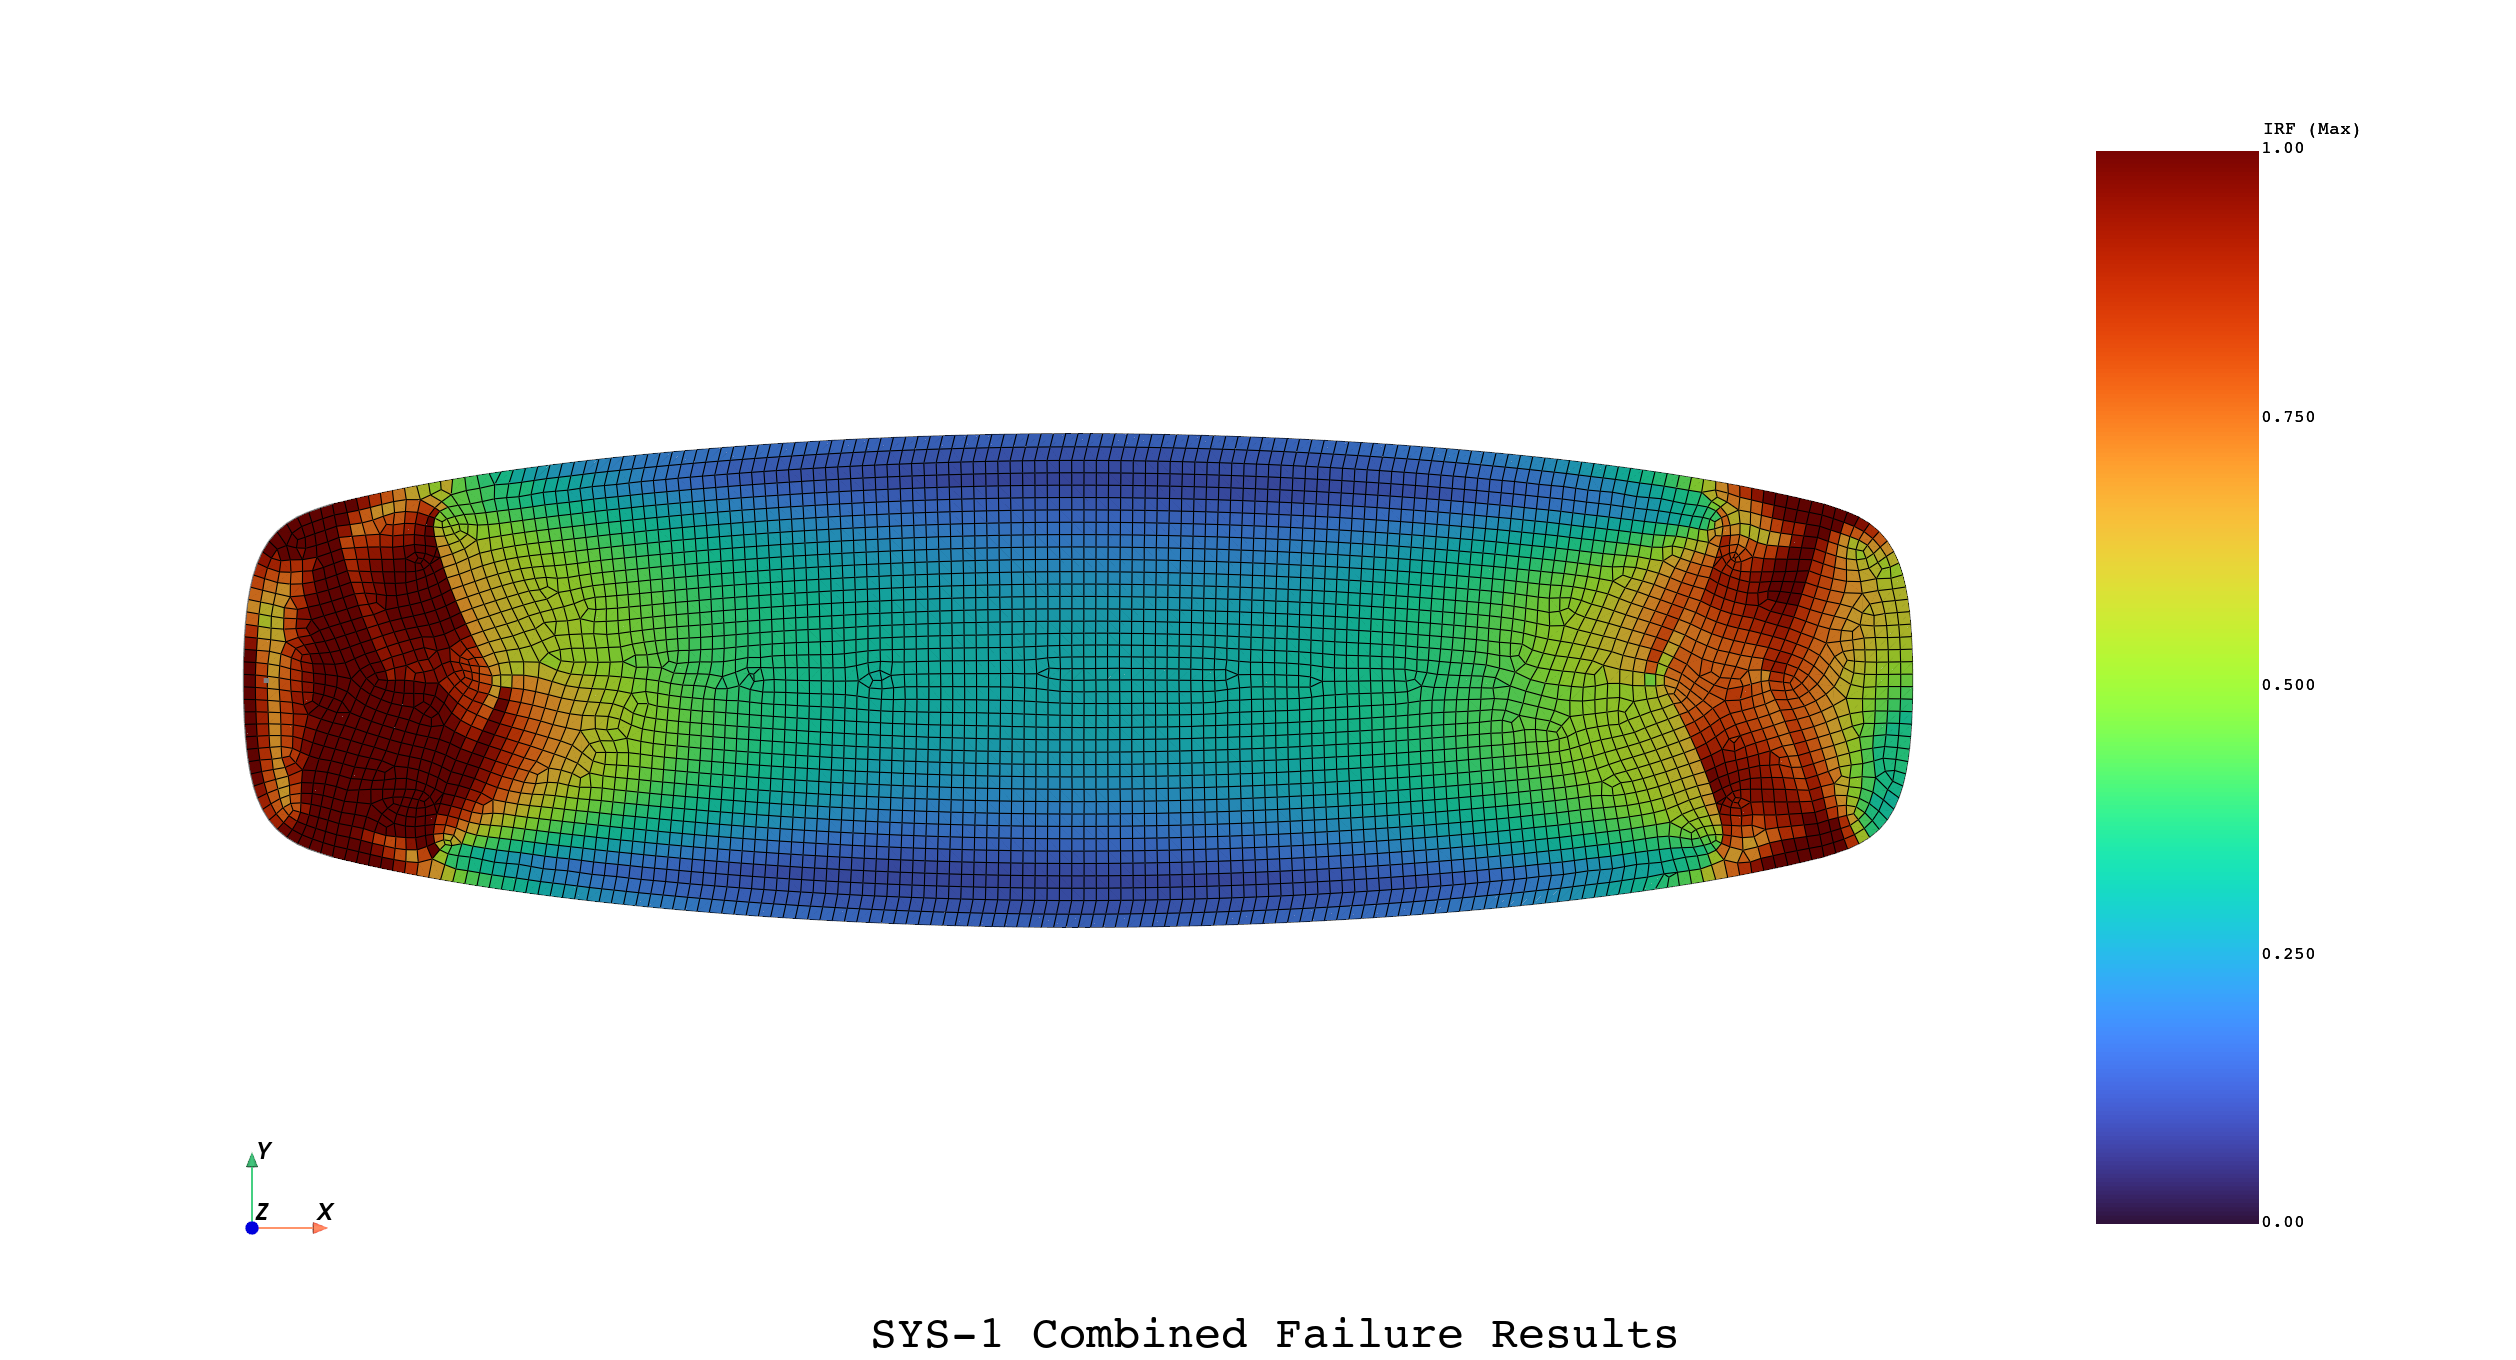 simulation of a kiteboard failure